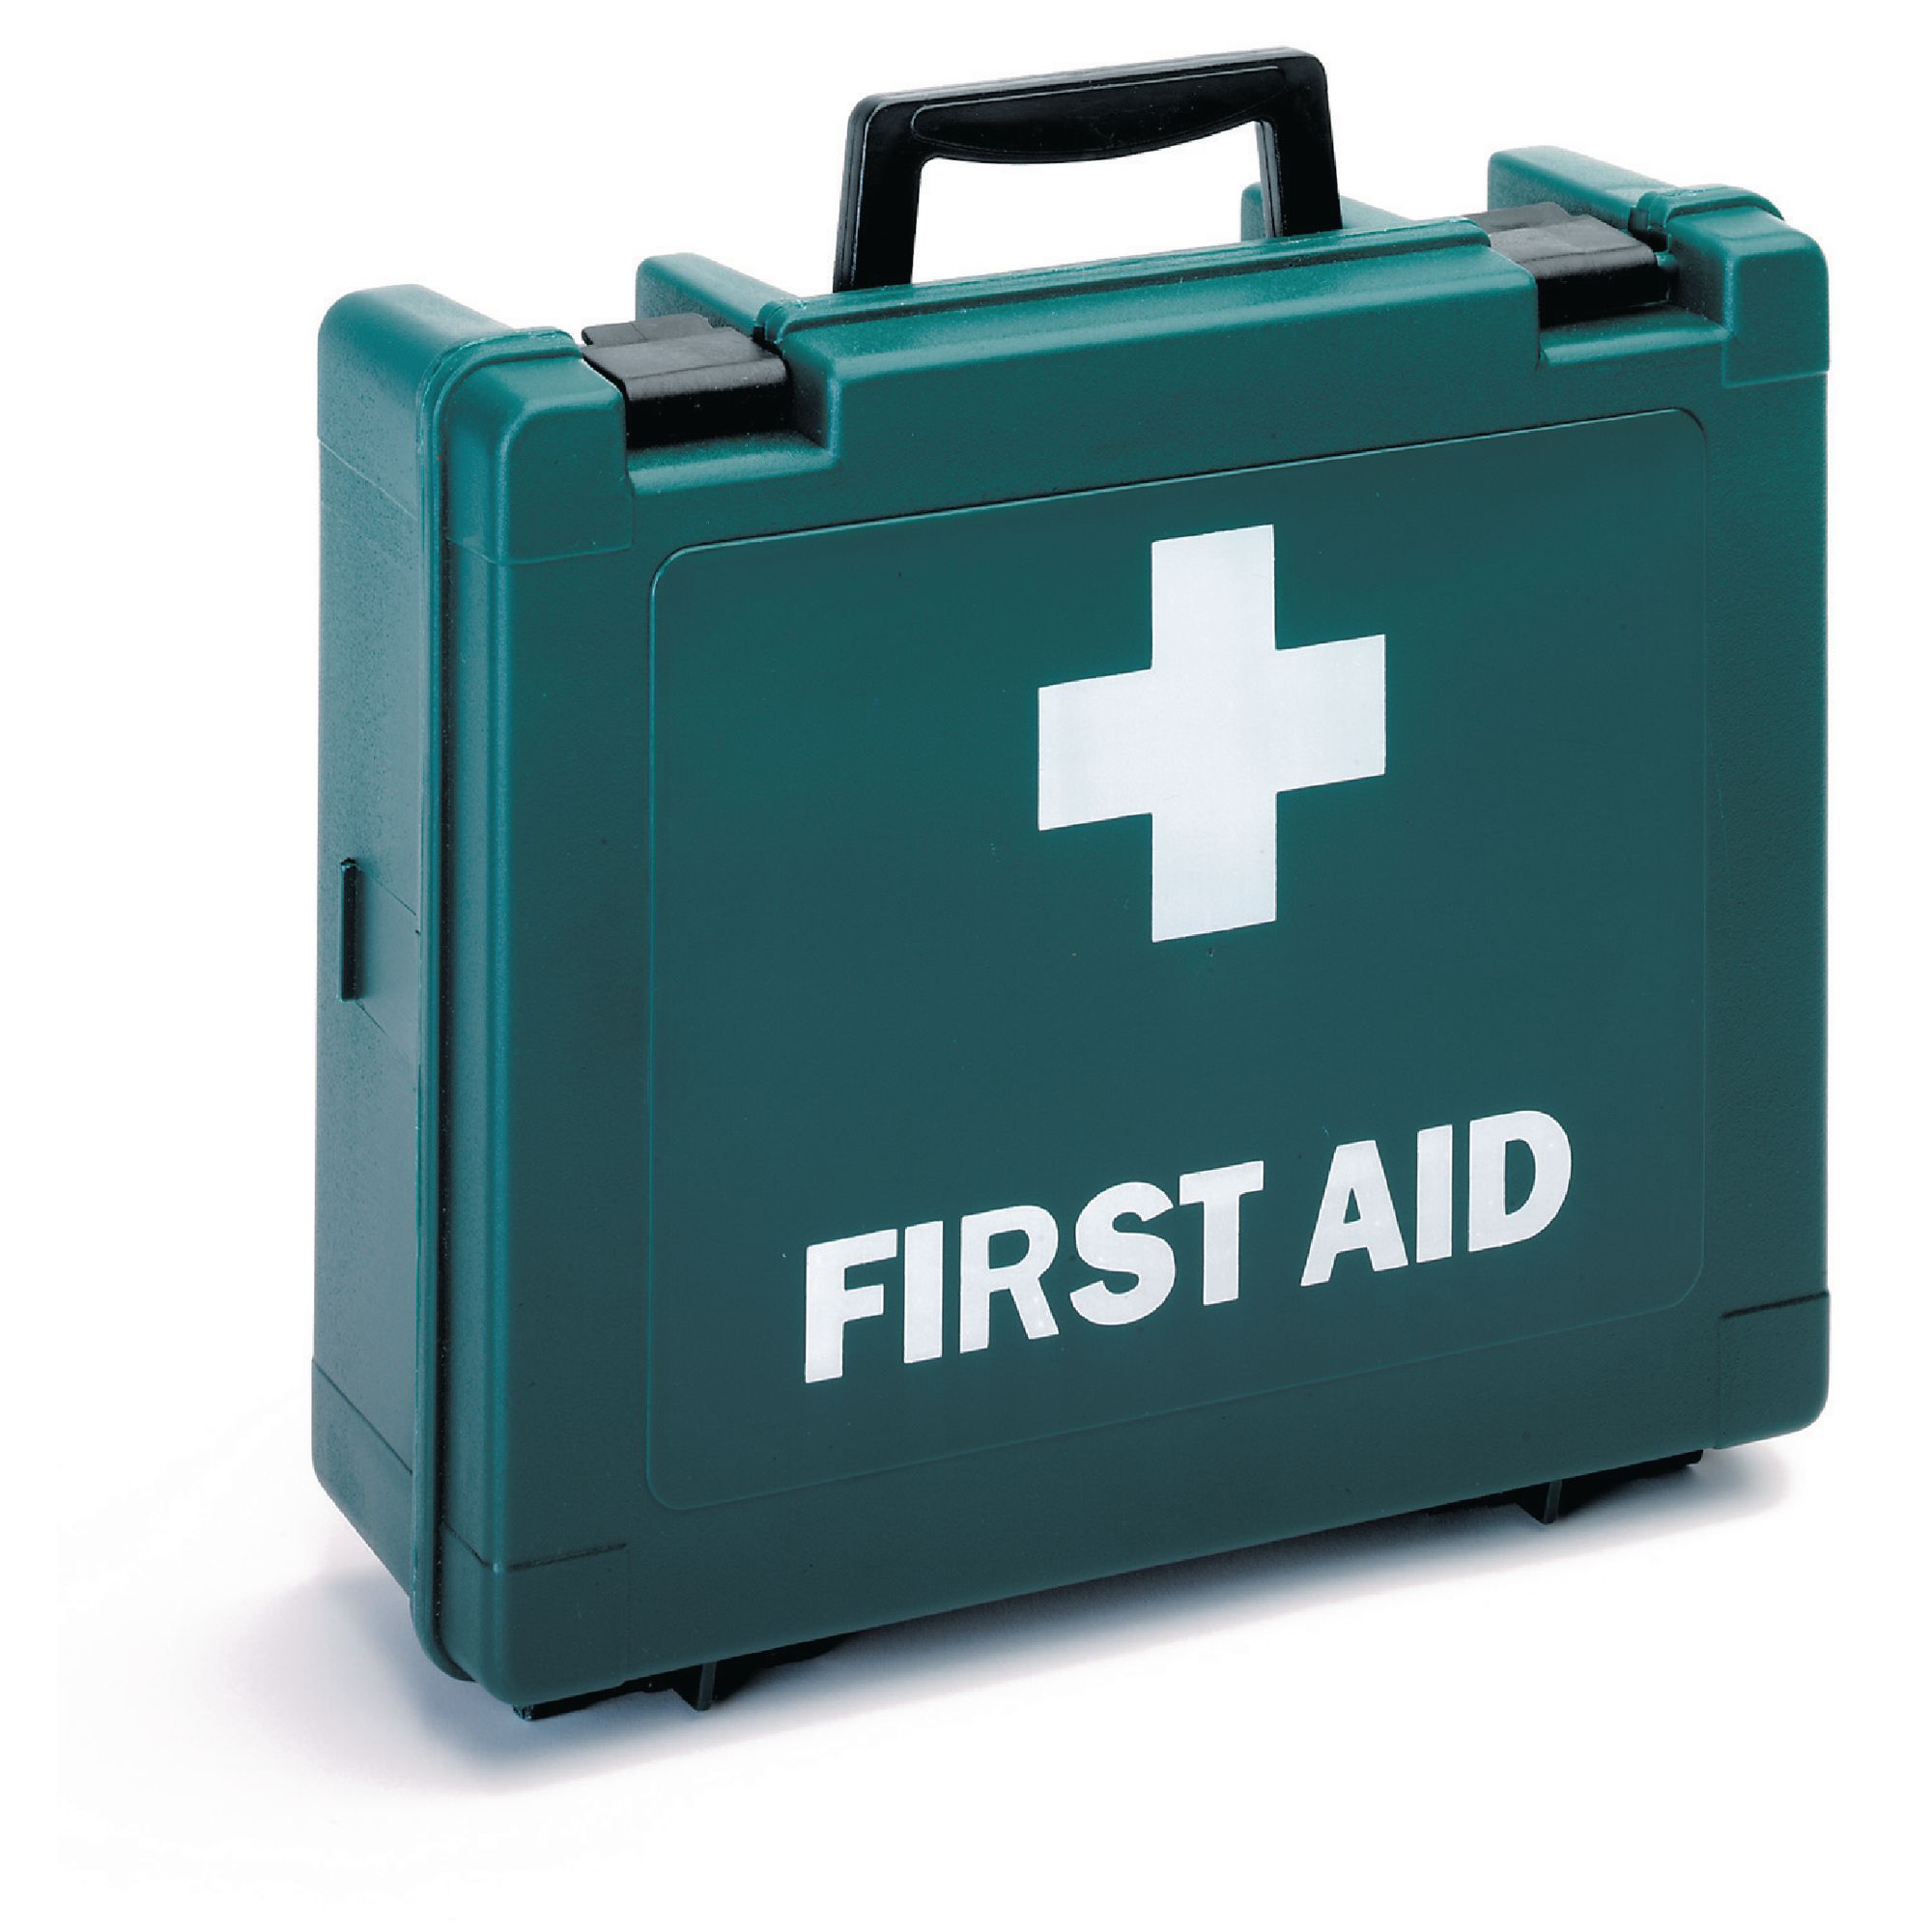 An army green first aid box